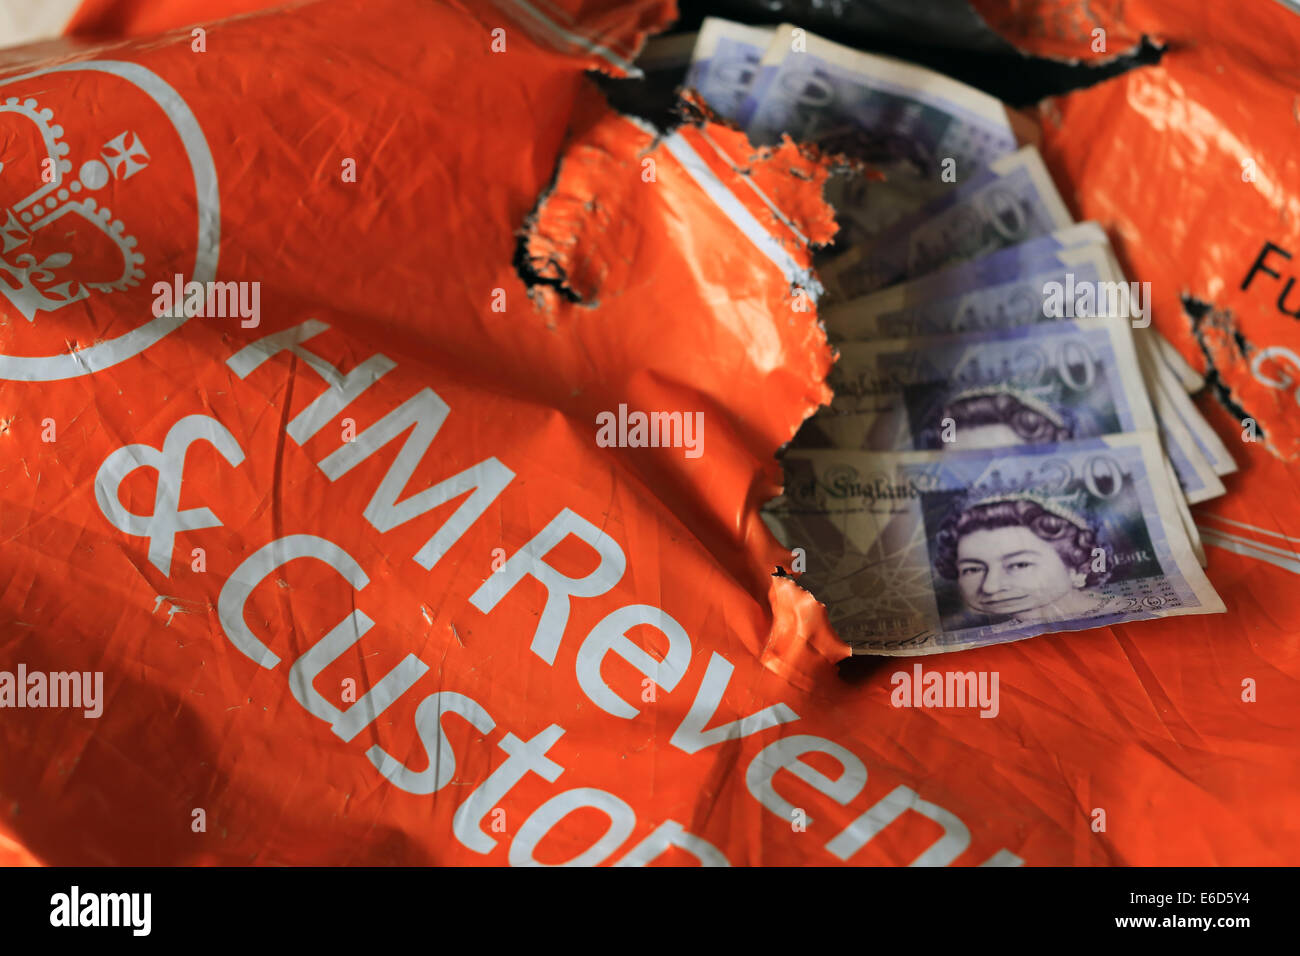 HM Revenue & Customs, Her Majesty's Revenue and Customs, déchiré et déchiré de l'paquet orange avec HMRC £20 notes Banque D'Images